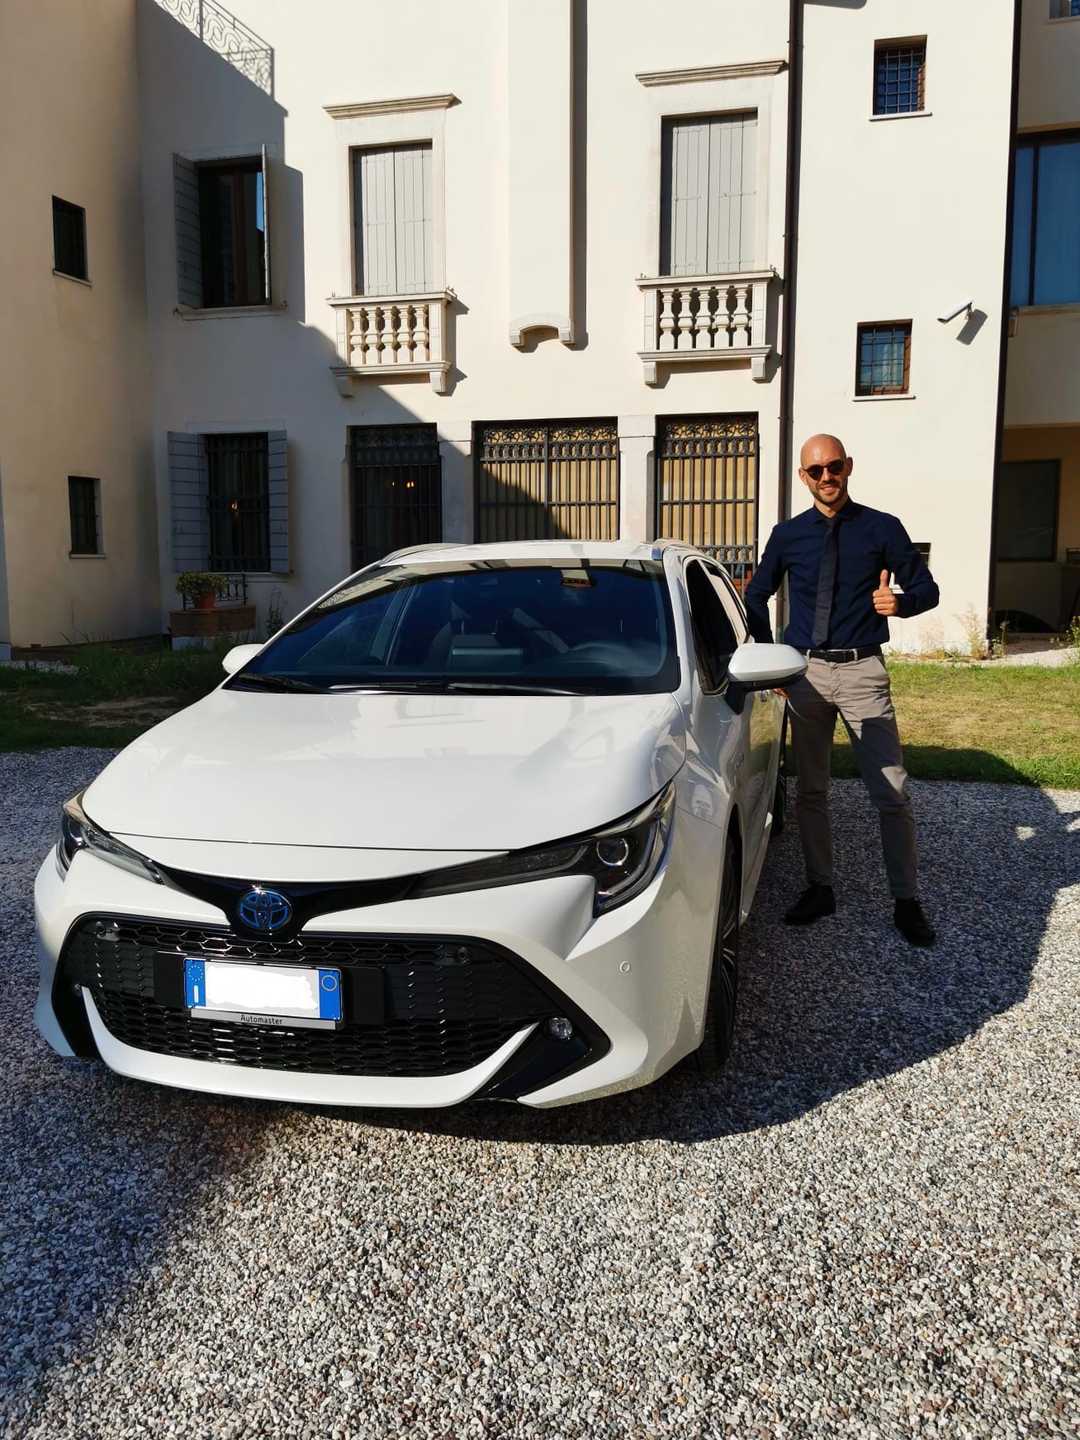 Ecoverso - Andrea Tomiolo con la sua nuova Toyota Corolla TS 1.8 Hybrid